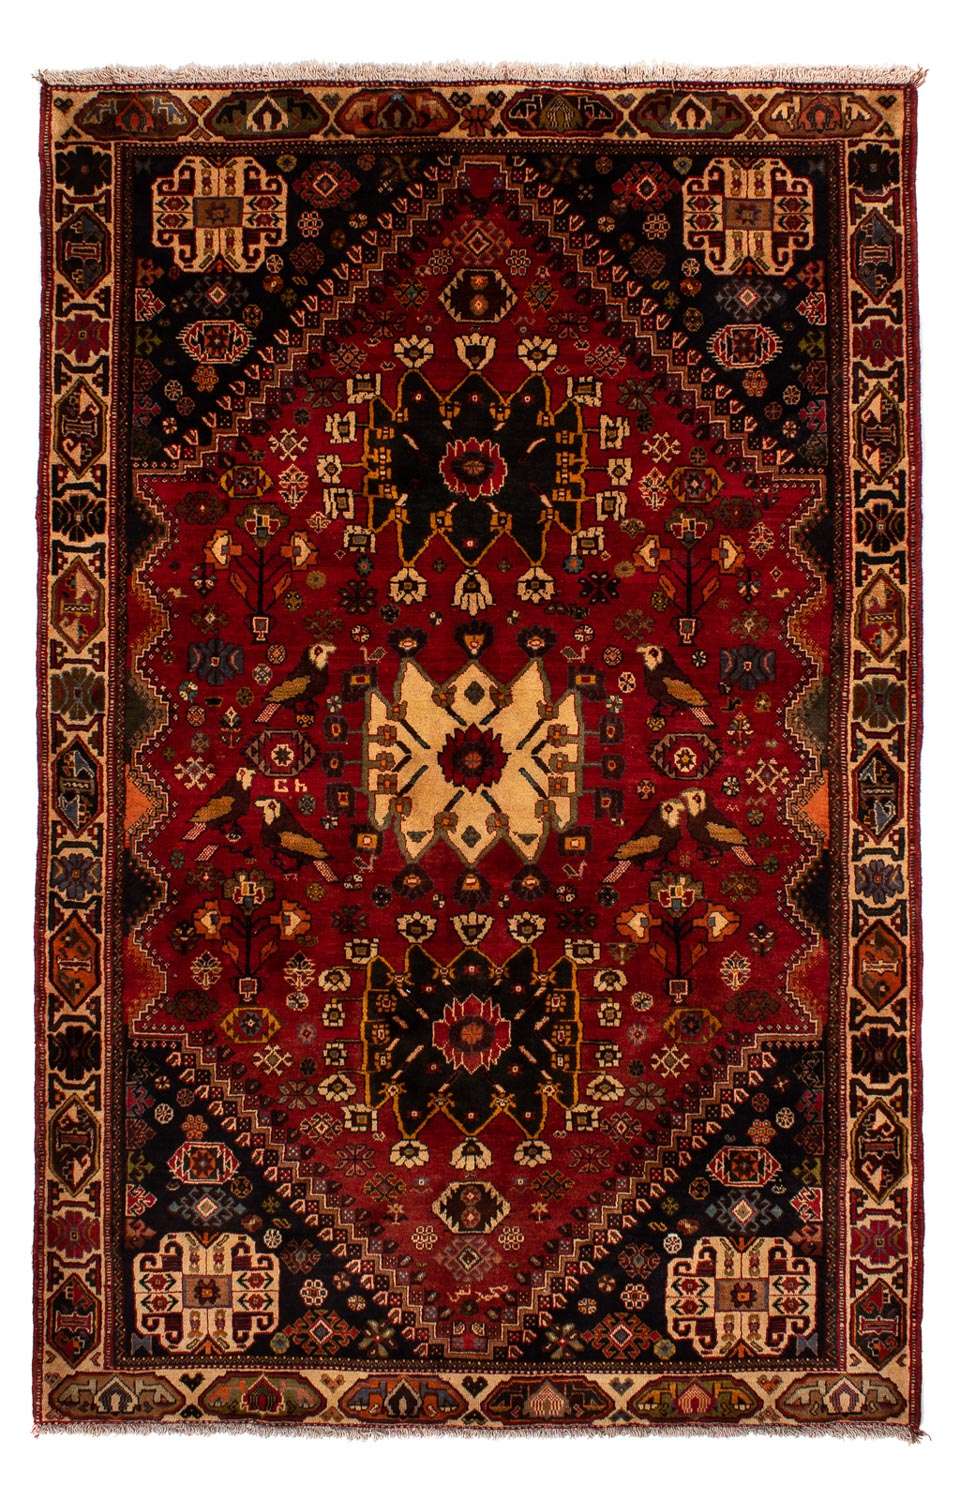 Alfombra persa - Nómada - 284 x 185 cm - rojo oscuro